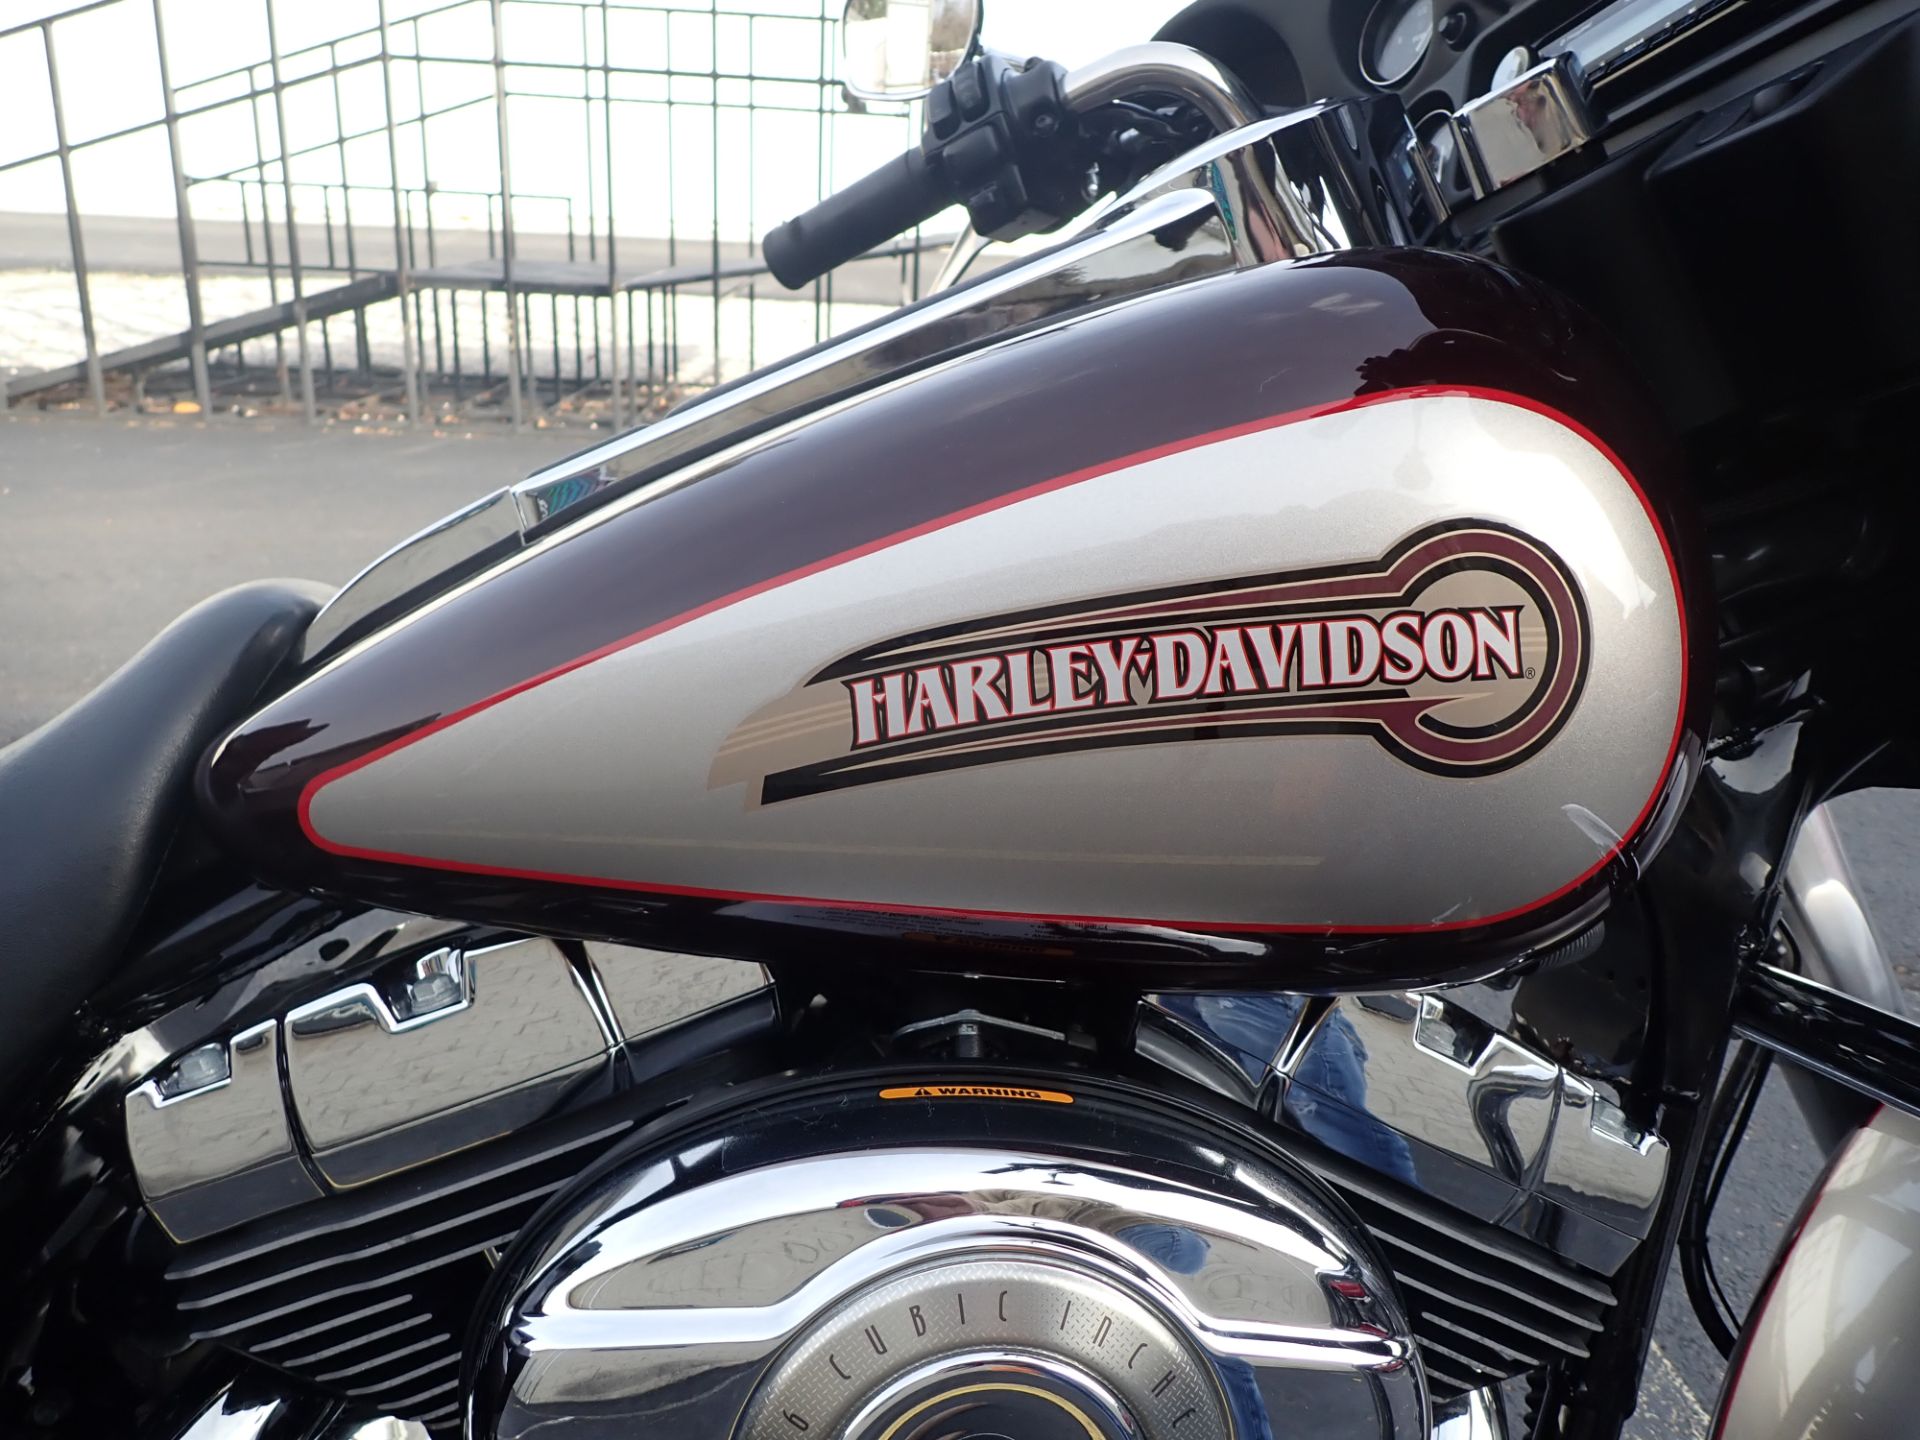 2007 Harley-Davidson Electra Glide® Classic in Massillon, Ohio - Photo 3